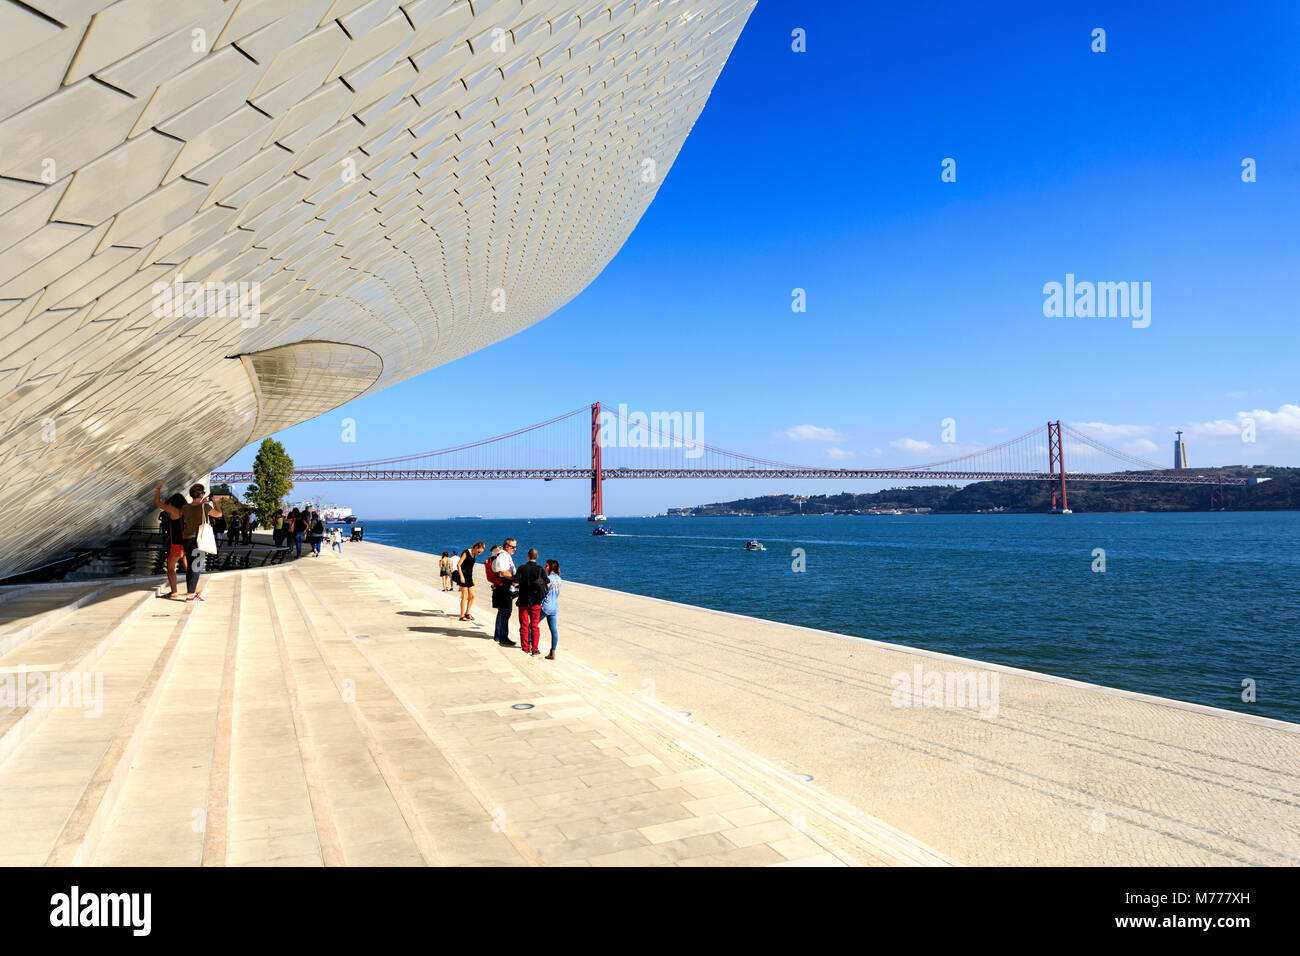 Trois étapes importantes dans la même image : la MAAT, le Pont du 25 avril et le Christ Roi, à Lisbonne au Portugal Banque D'Images